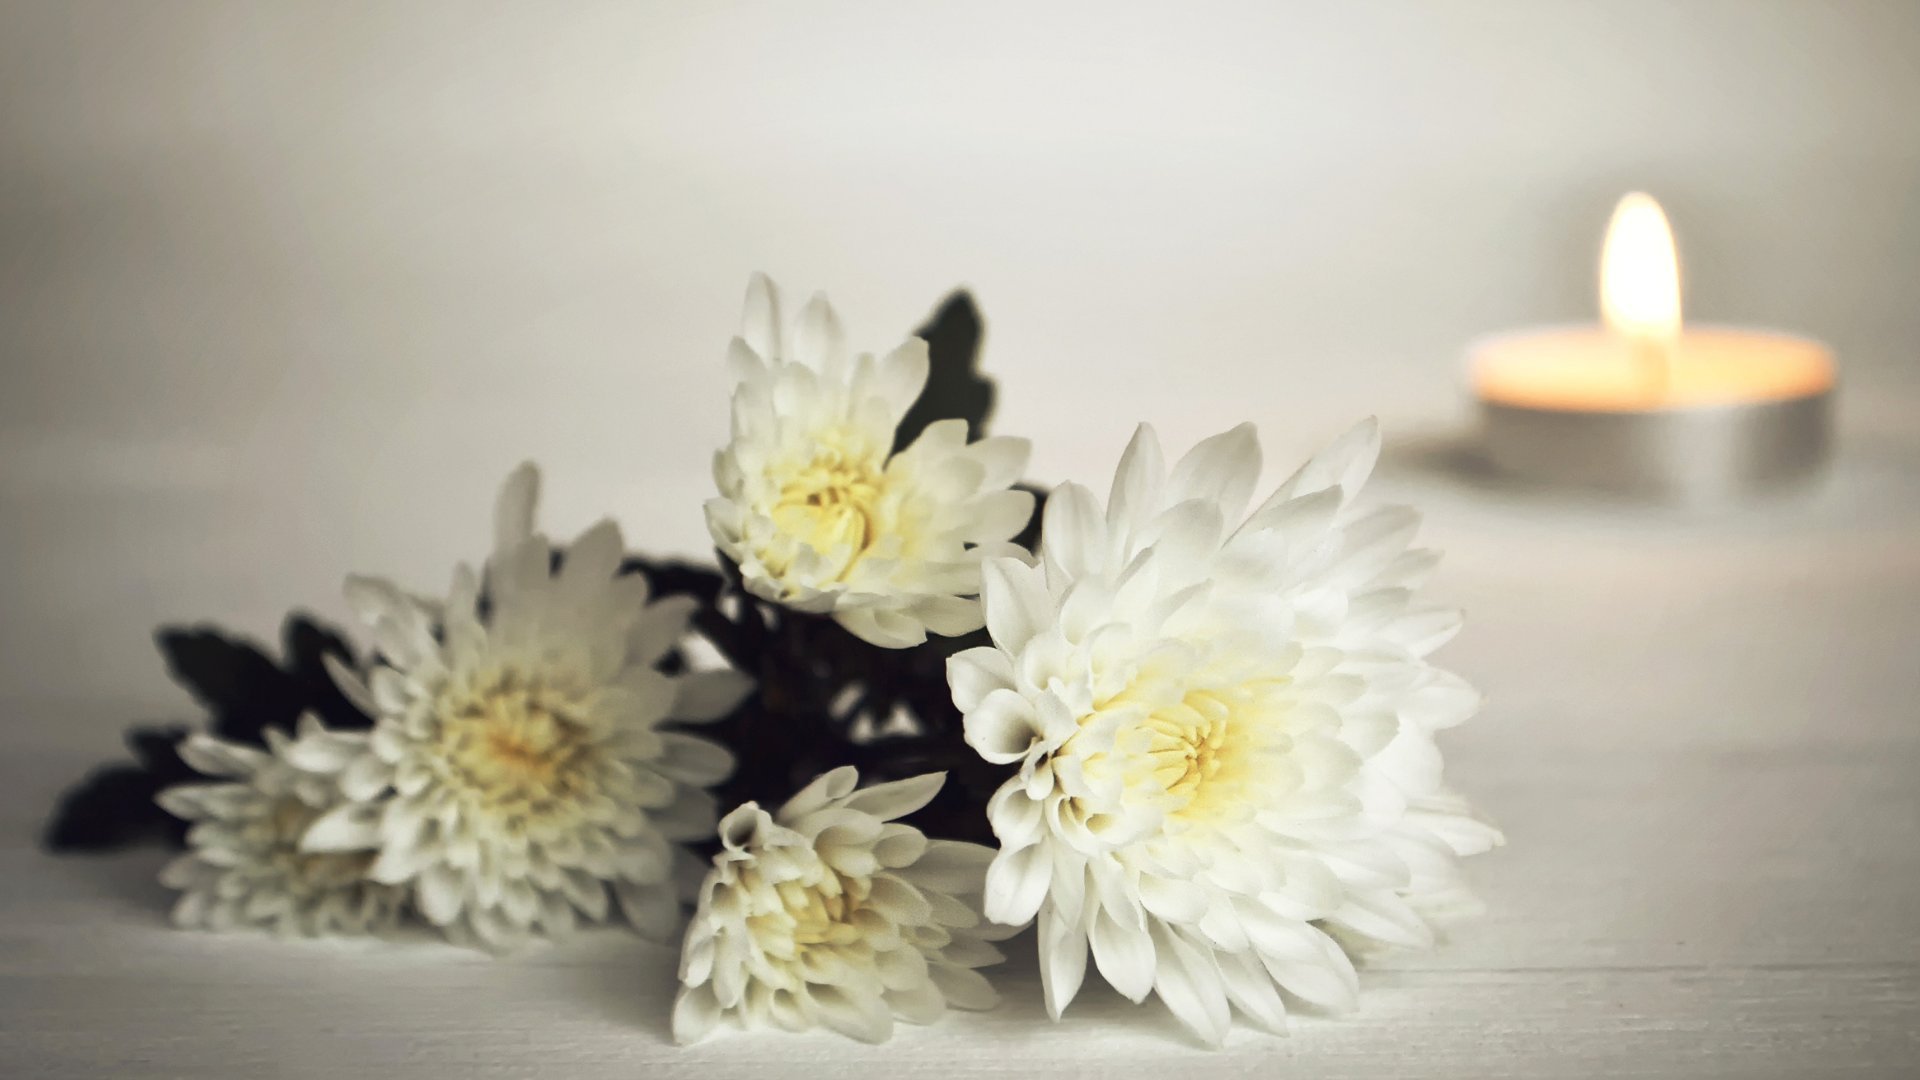 Flores brancas e, ao fundo, uma vela acesa.